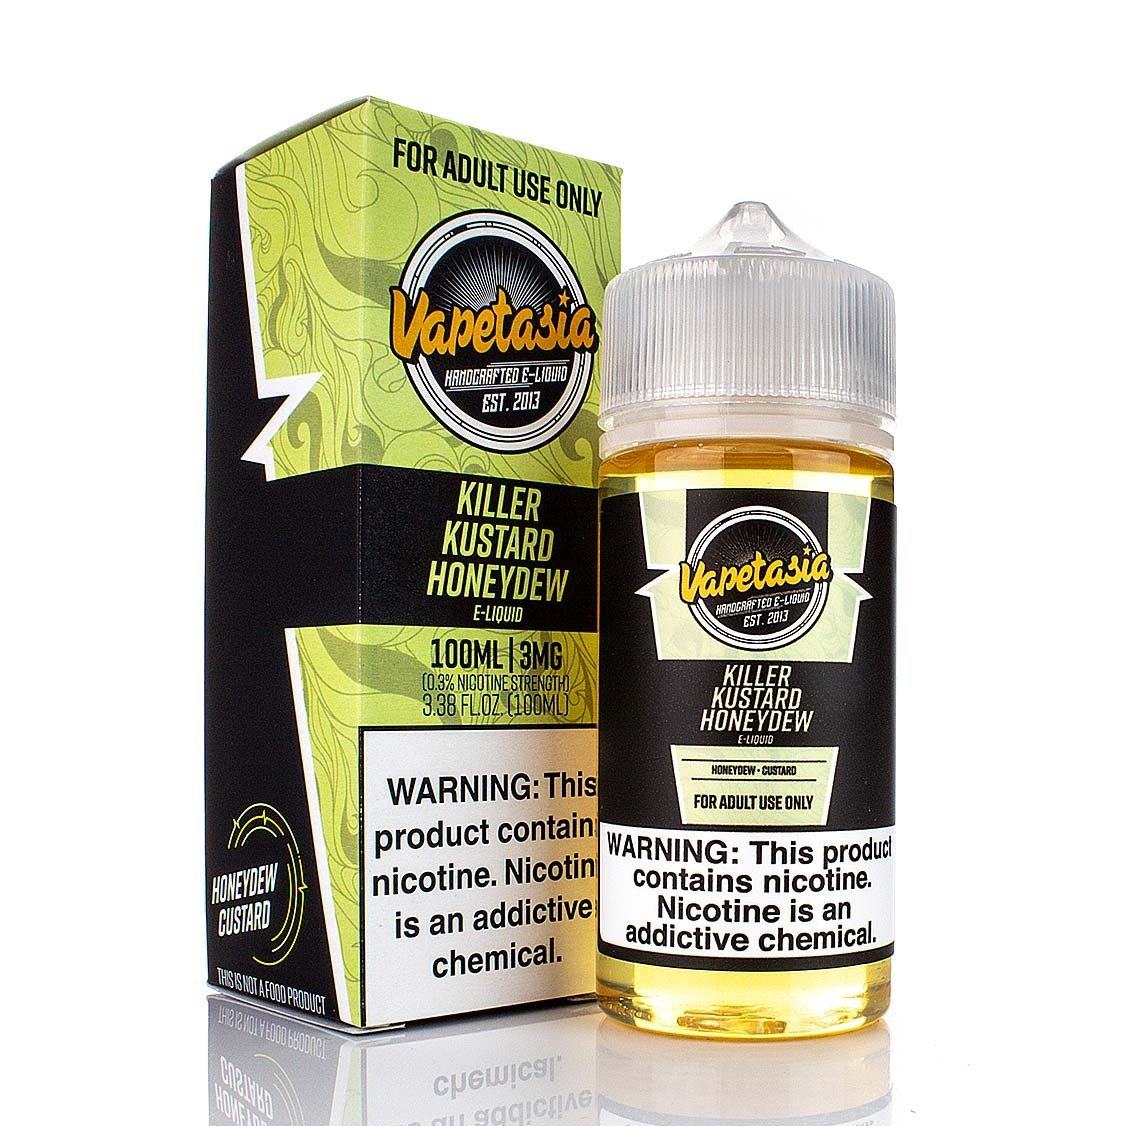 Killer Kustard Honeydew by Vapetasia Series 100mL with Packaging